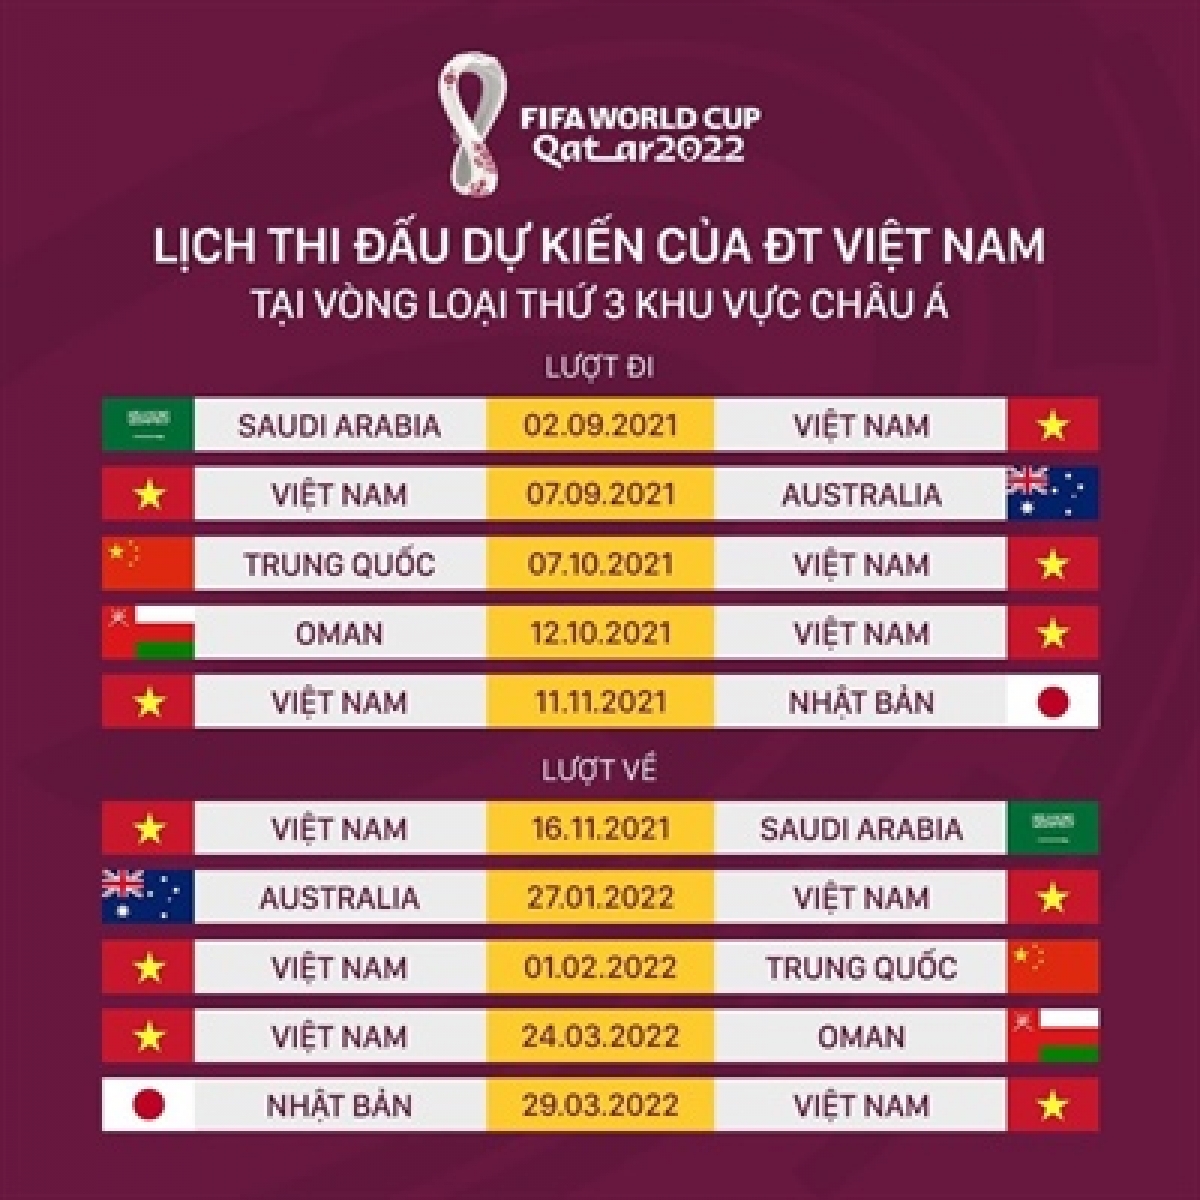 Lịch thi đấu tuyển Việt Nam tại vòng loại thứ 3 World cup 2022